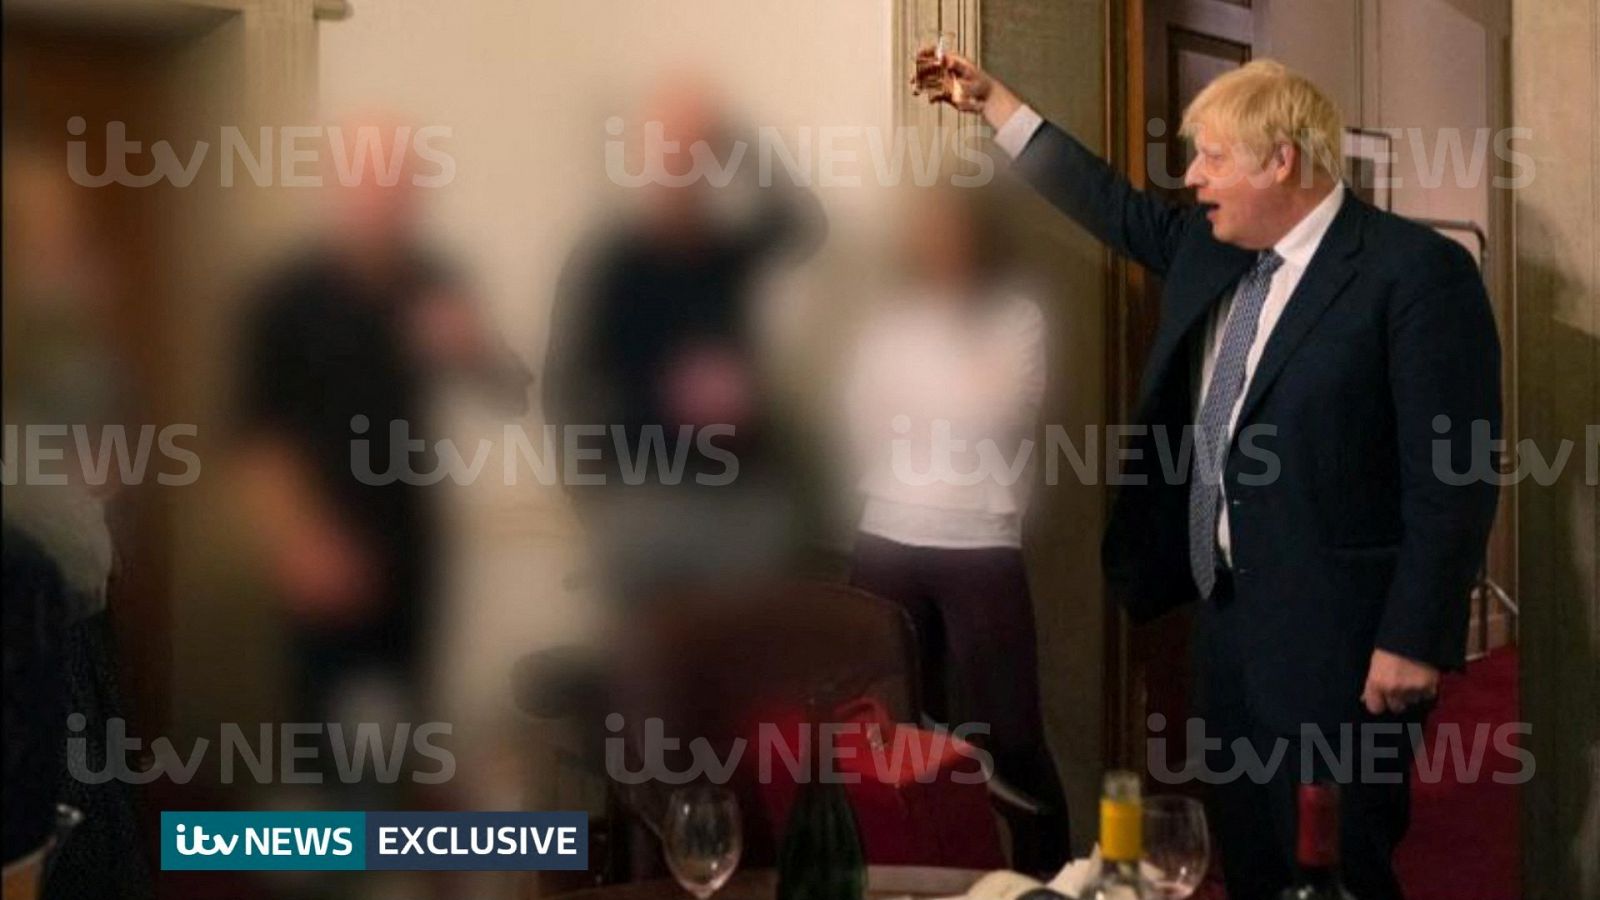 Nuevas imágenes de Boris Johnson en una fiesta durante la pandemia